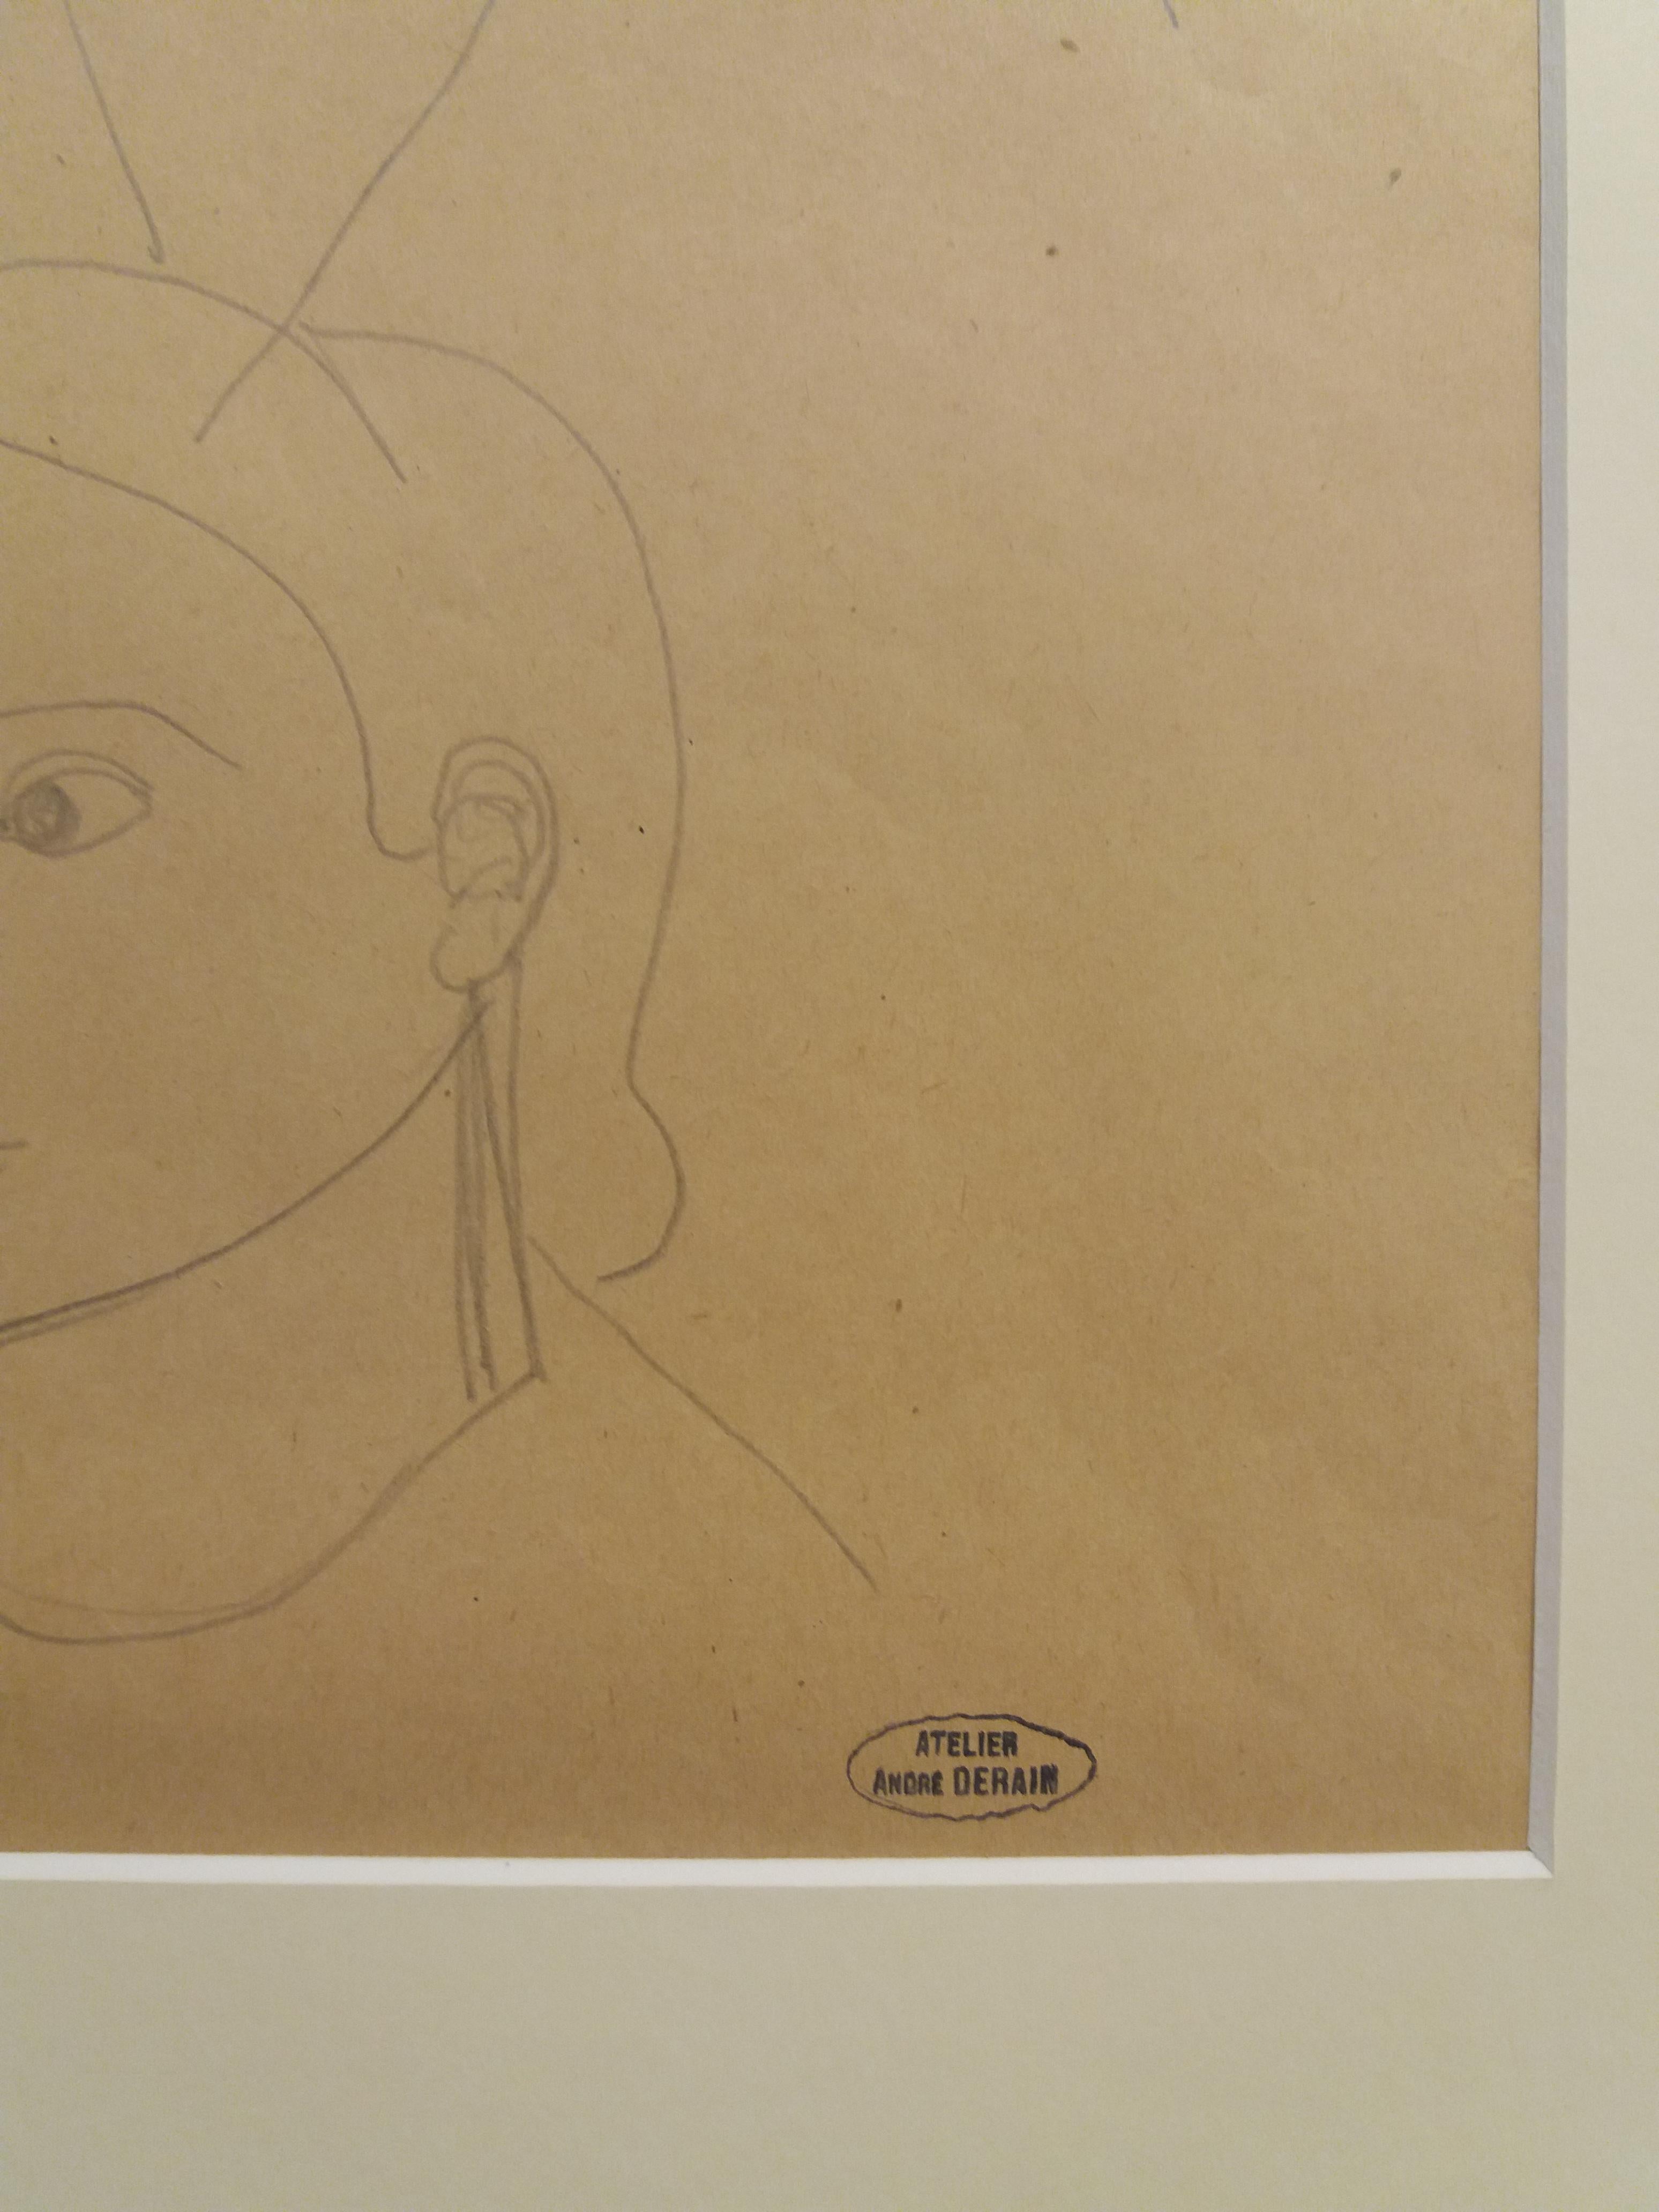  visage de profil. dessin original au crayon peinture
André Derain (Chatou, 10 juin 1880-Garches, 8 septembre 1954) est un peintre, illustrateur et scénographe français, représentant du fauvisme.

Derain a dix-huit ans lorsqu'il entre à l'Académie